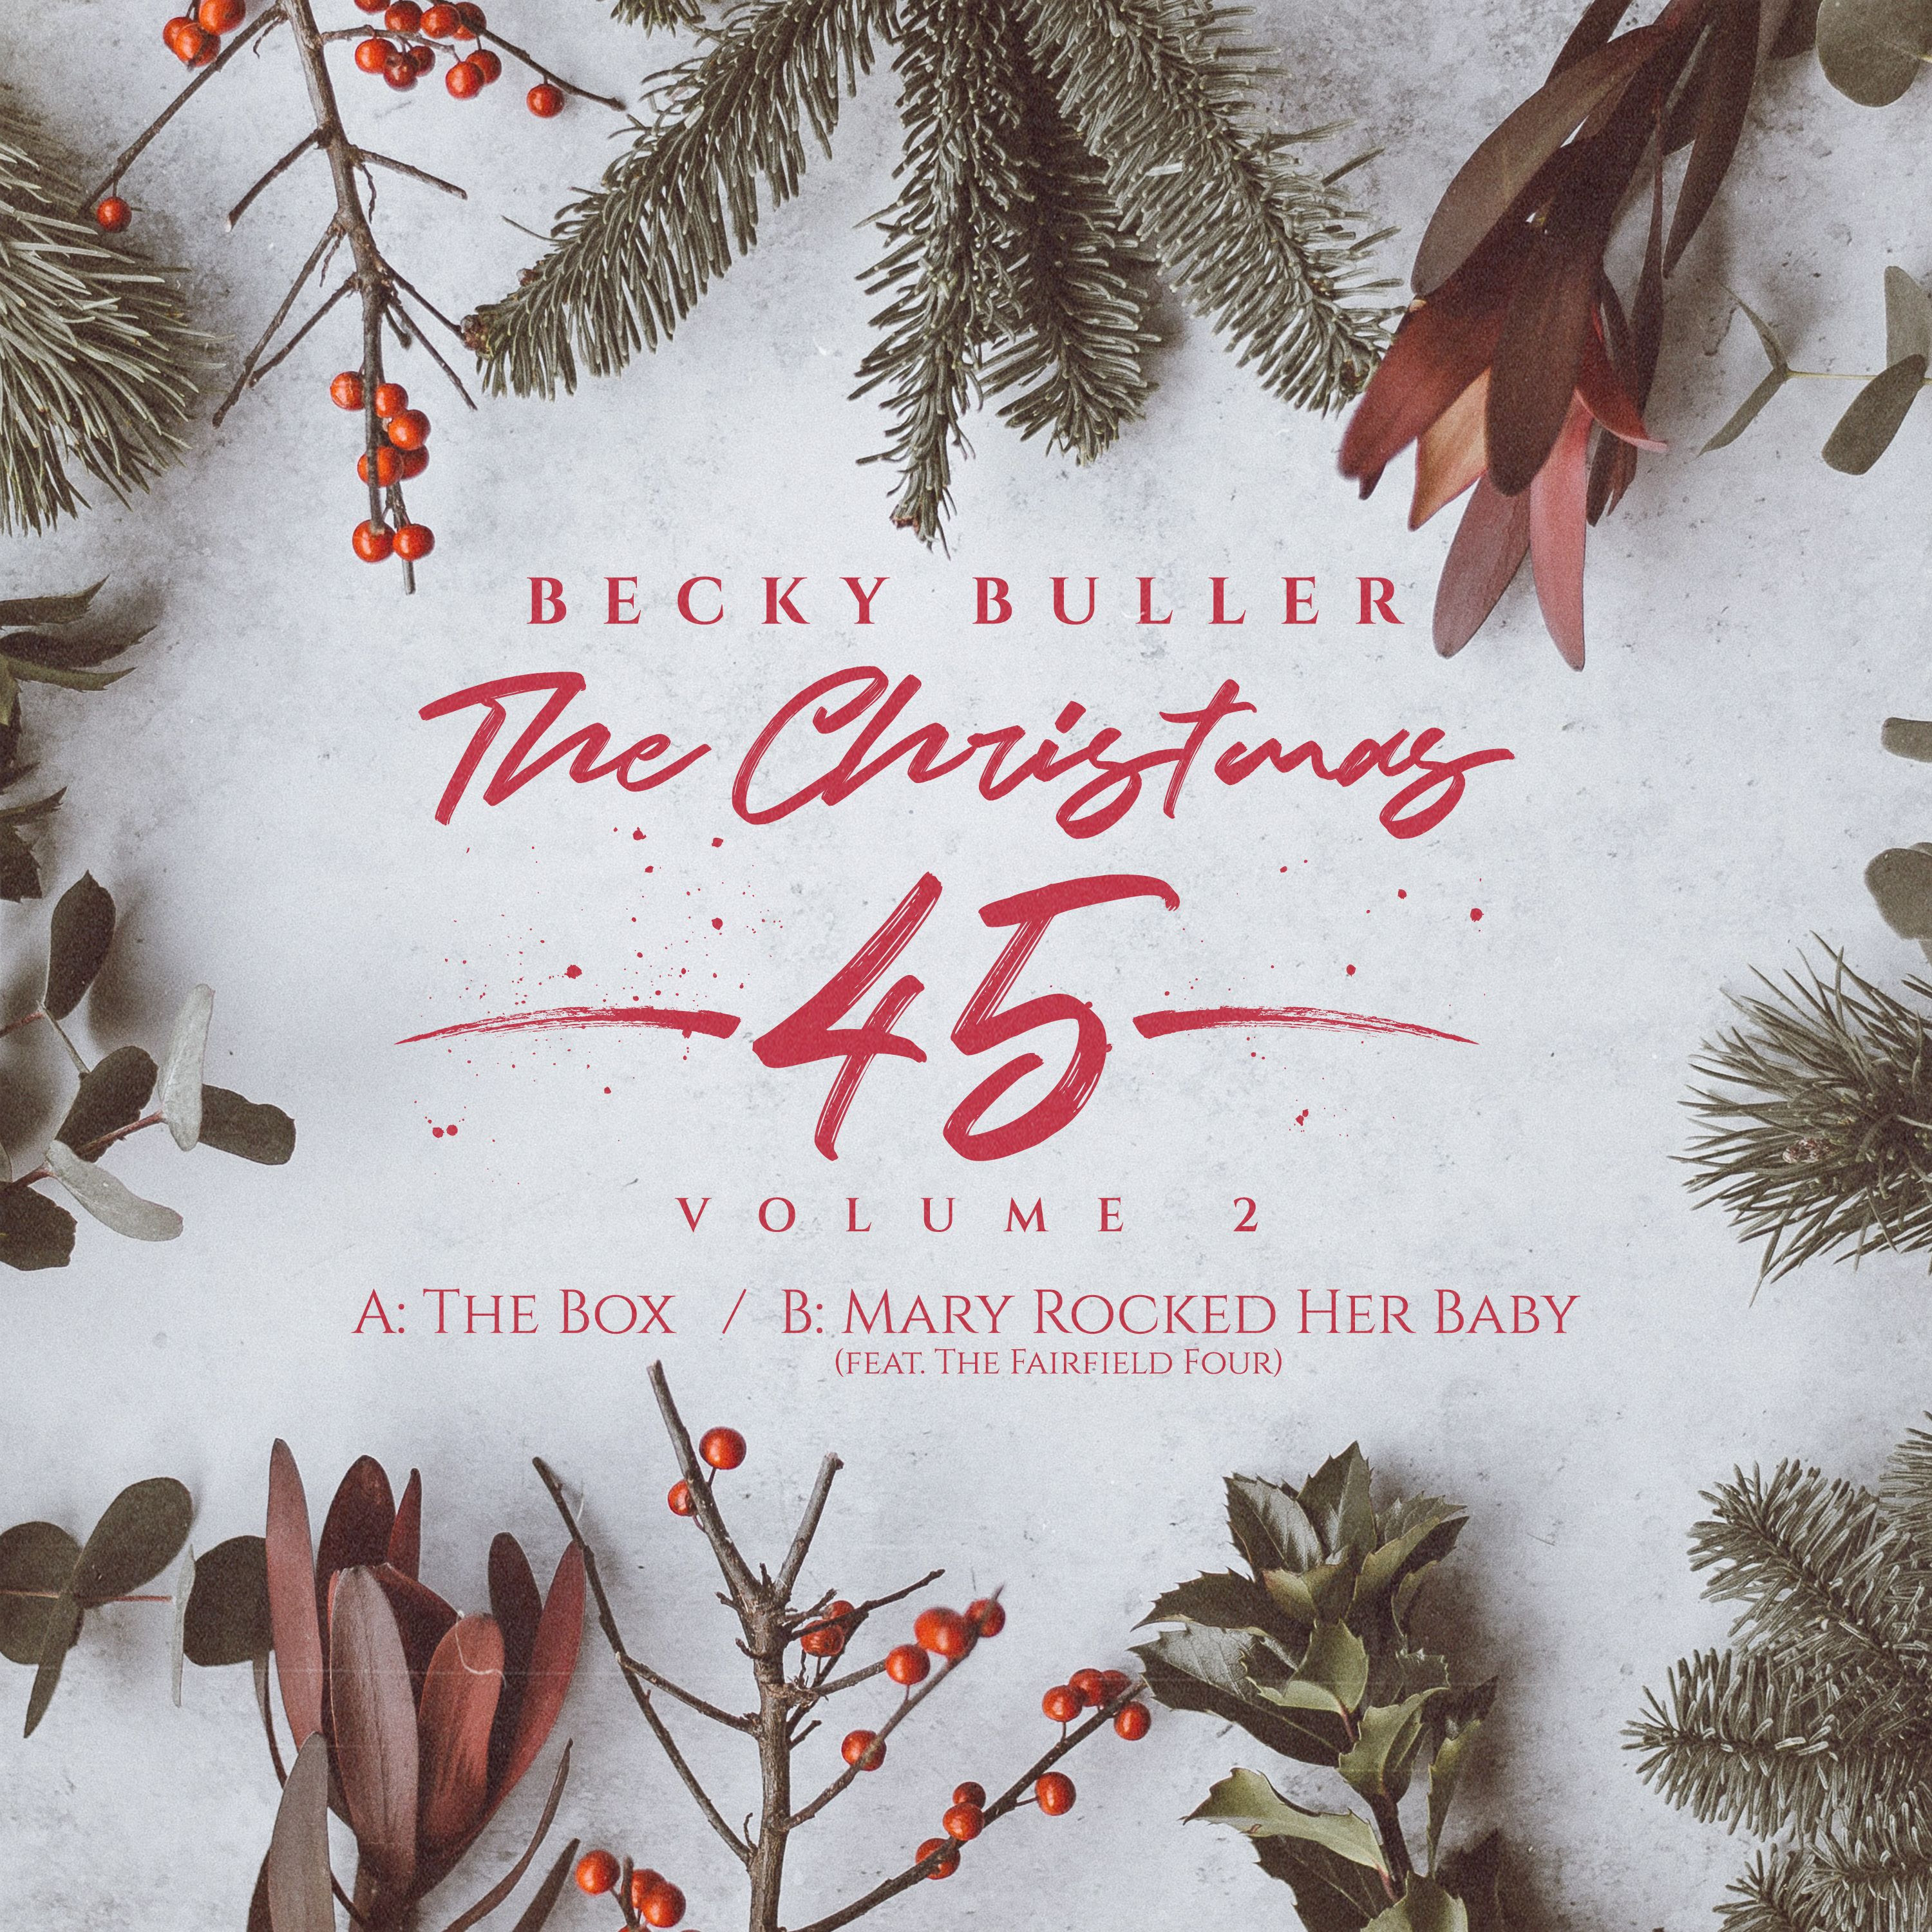 Becky Buller releases "The Christmas 45, Volume 2"